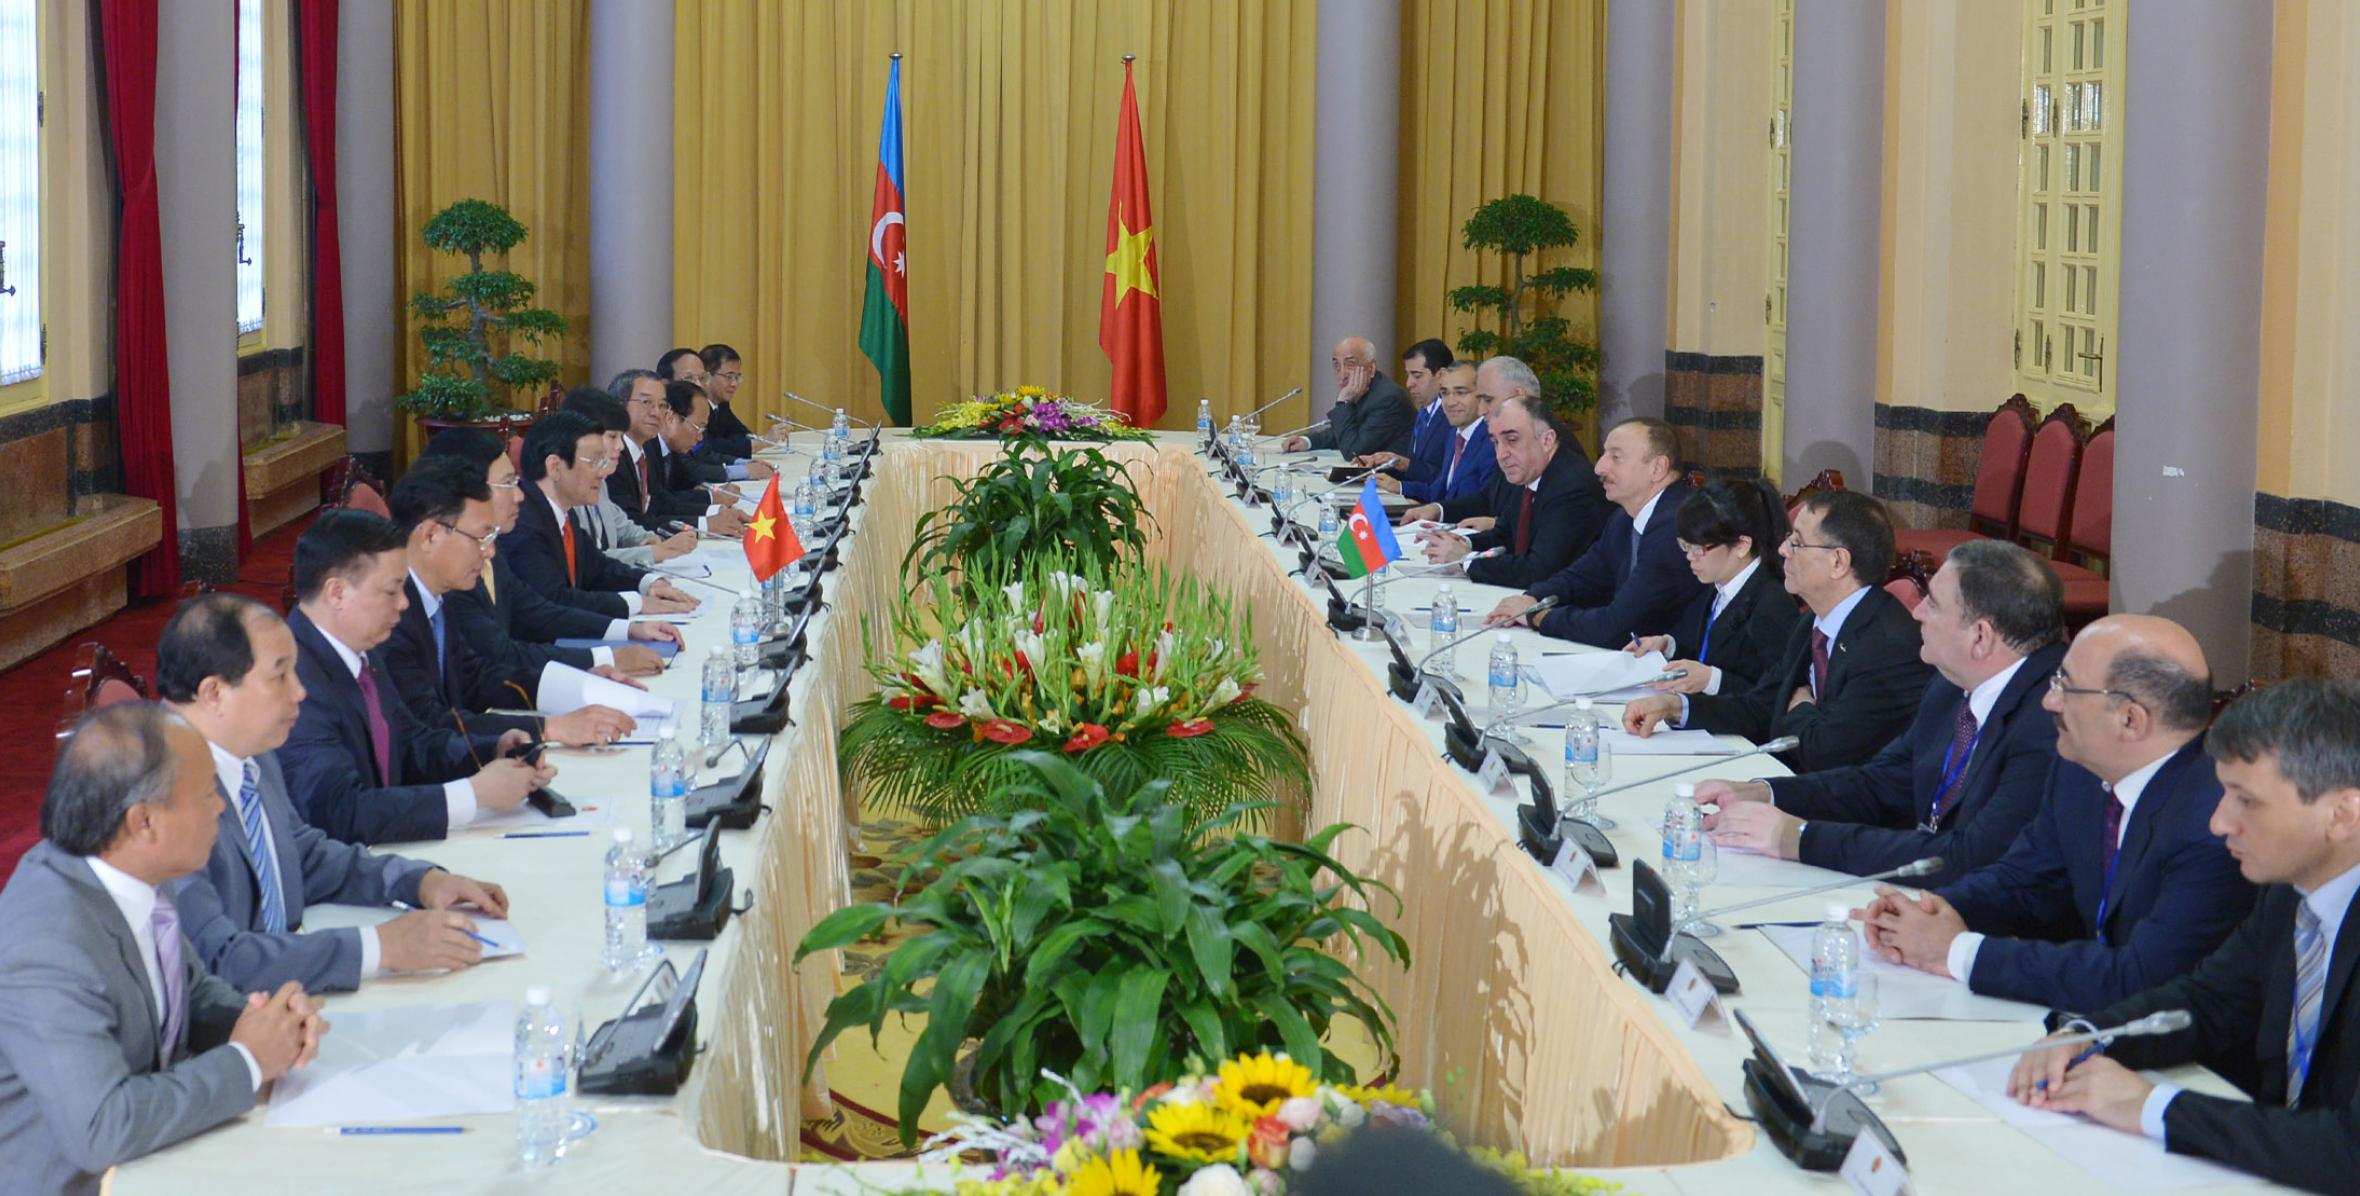 Состоялась встреча Ильхама Алиева и Президента Вьетнама Чыонга Тана Шанга в расширенном составе с участием делегаций